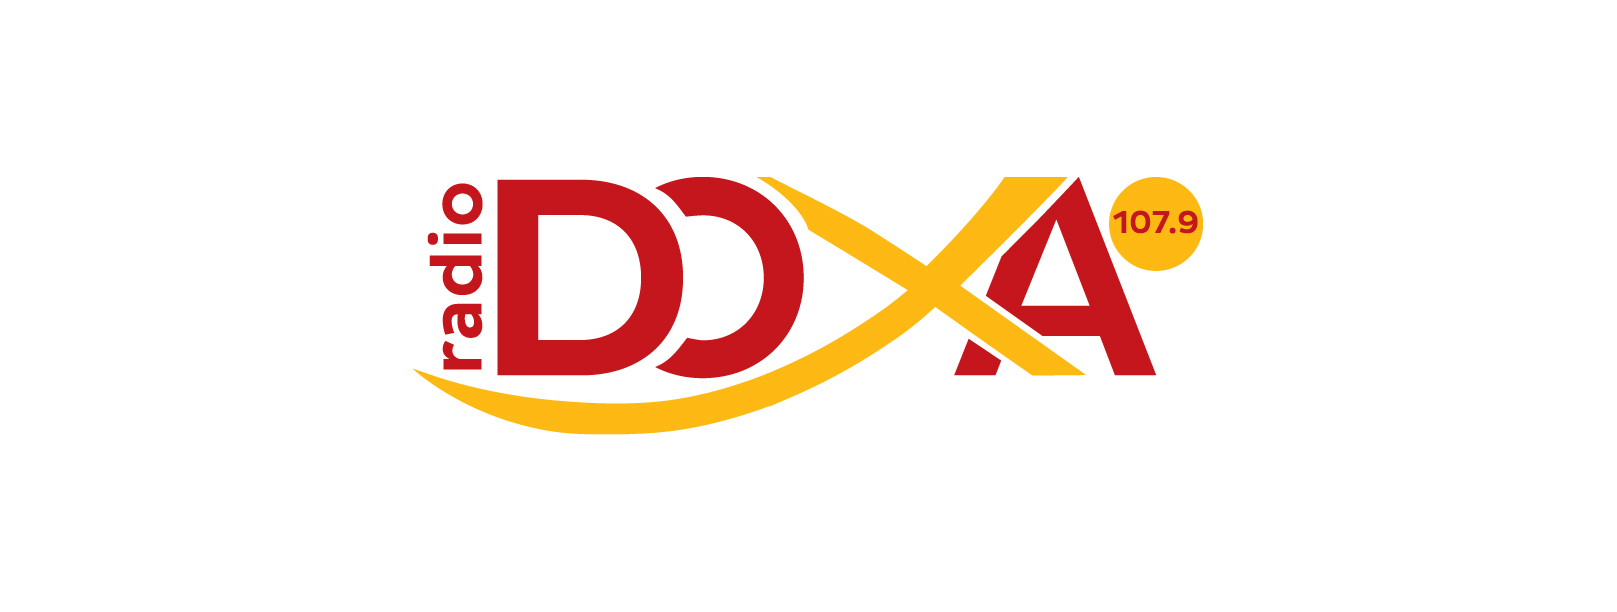 Doxa_logo